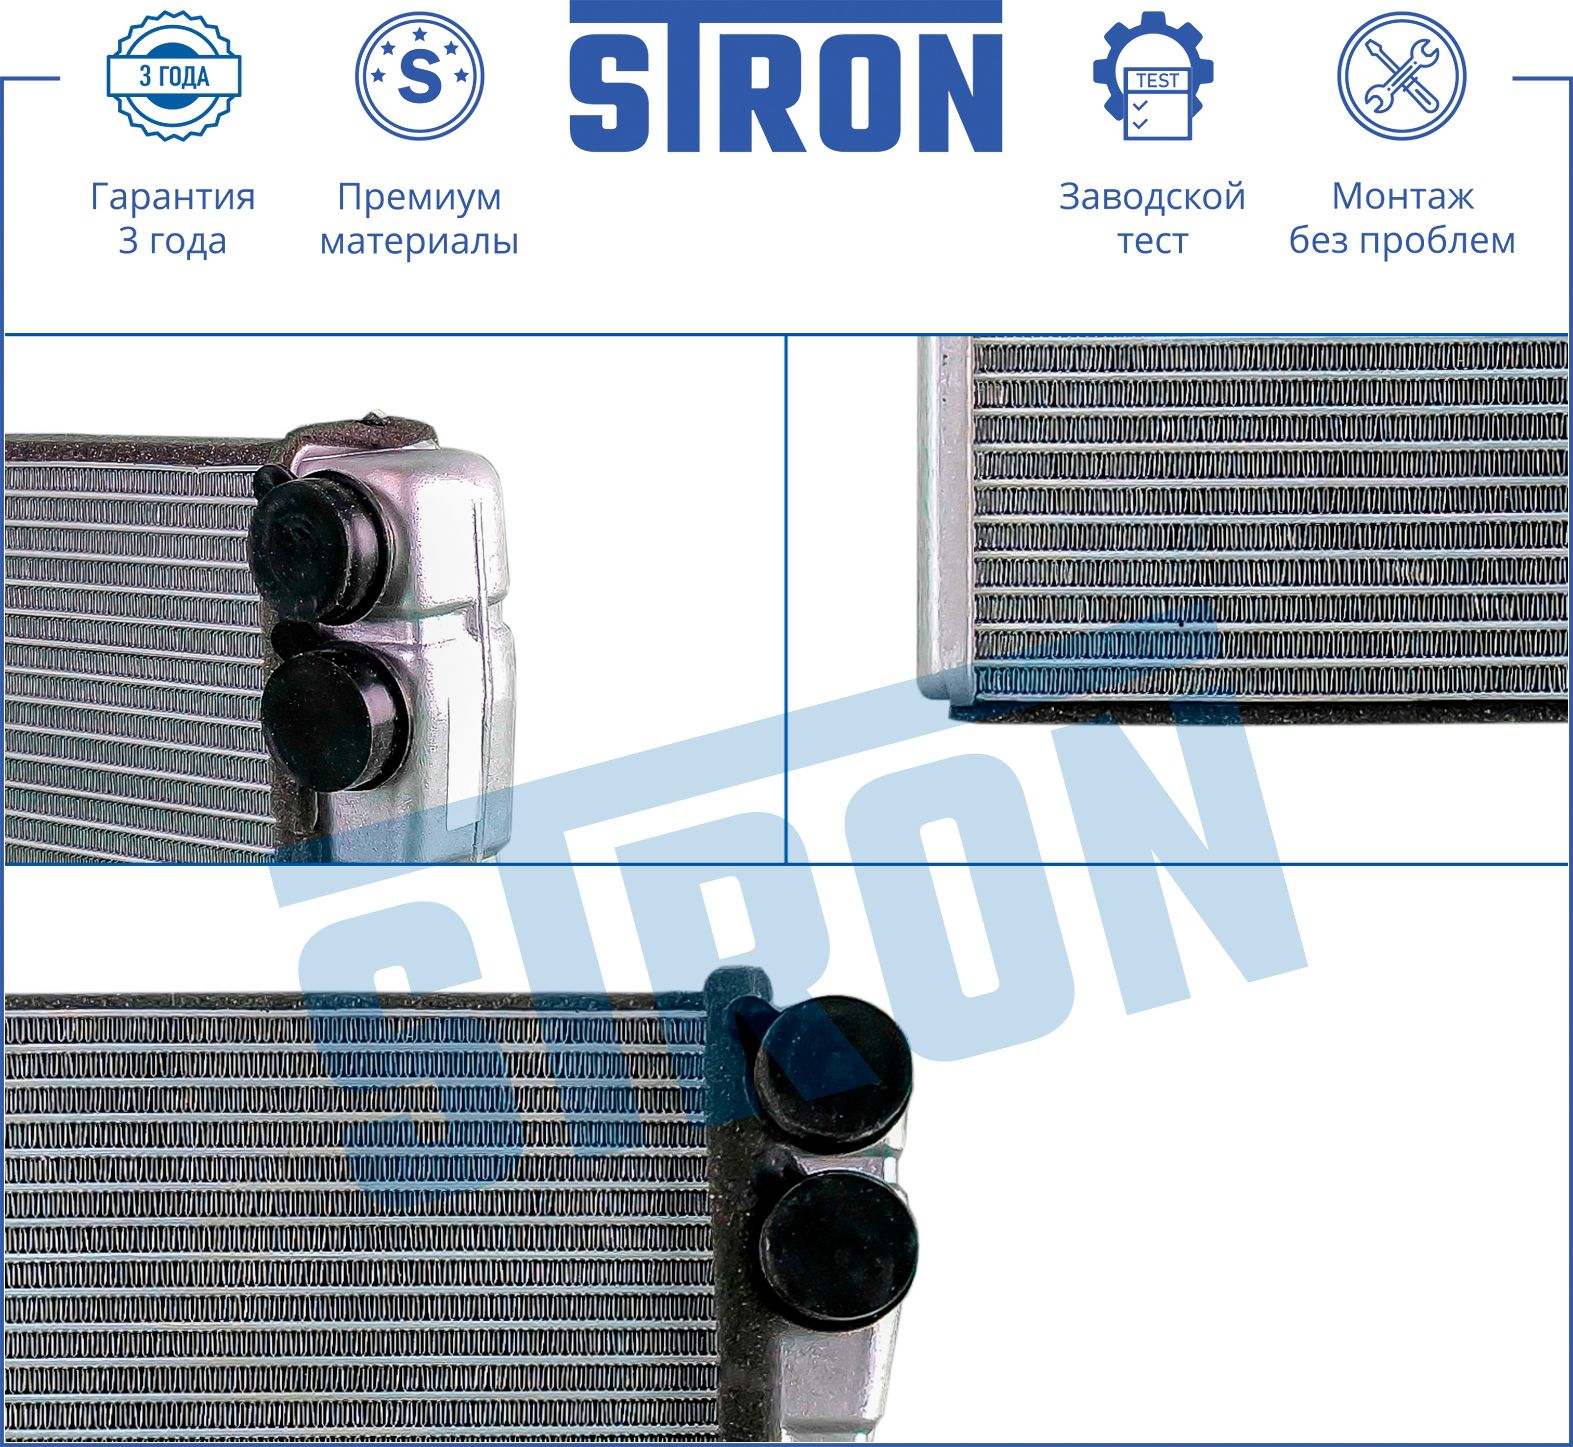 Радиатор печки  AUDI A3 / S3 (8P) STH0022 Stron